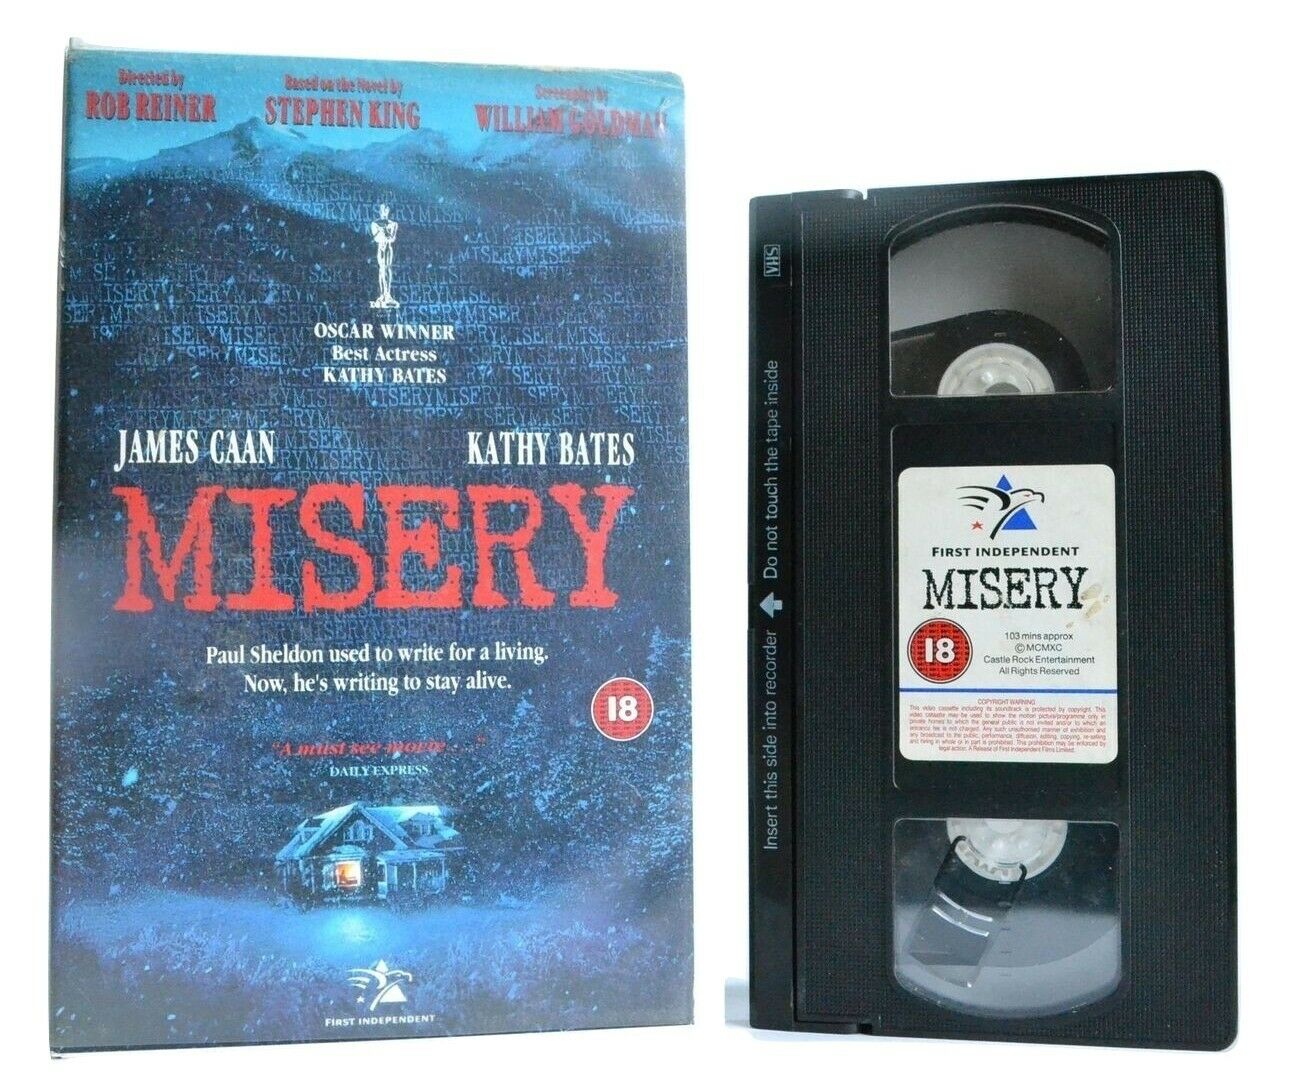 Misery: Based On S.King Novel - Psychological Thriller - J.Caan/K.Bates - VHS-